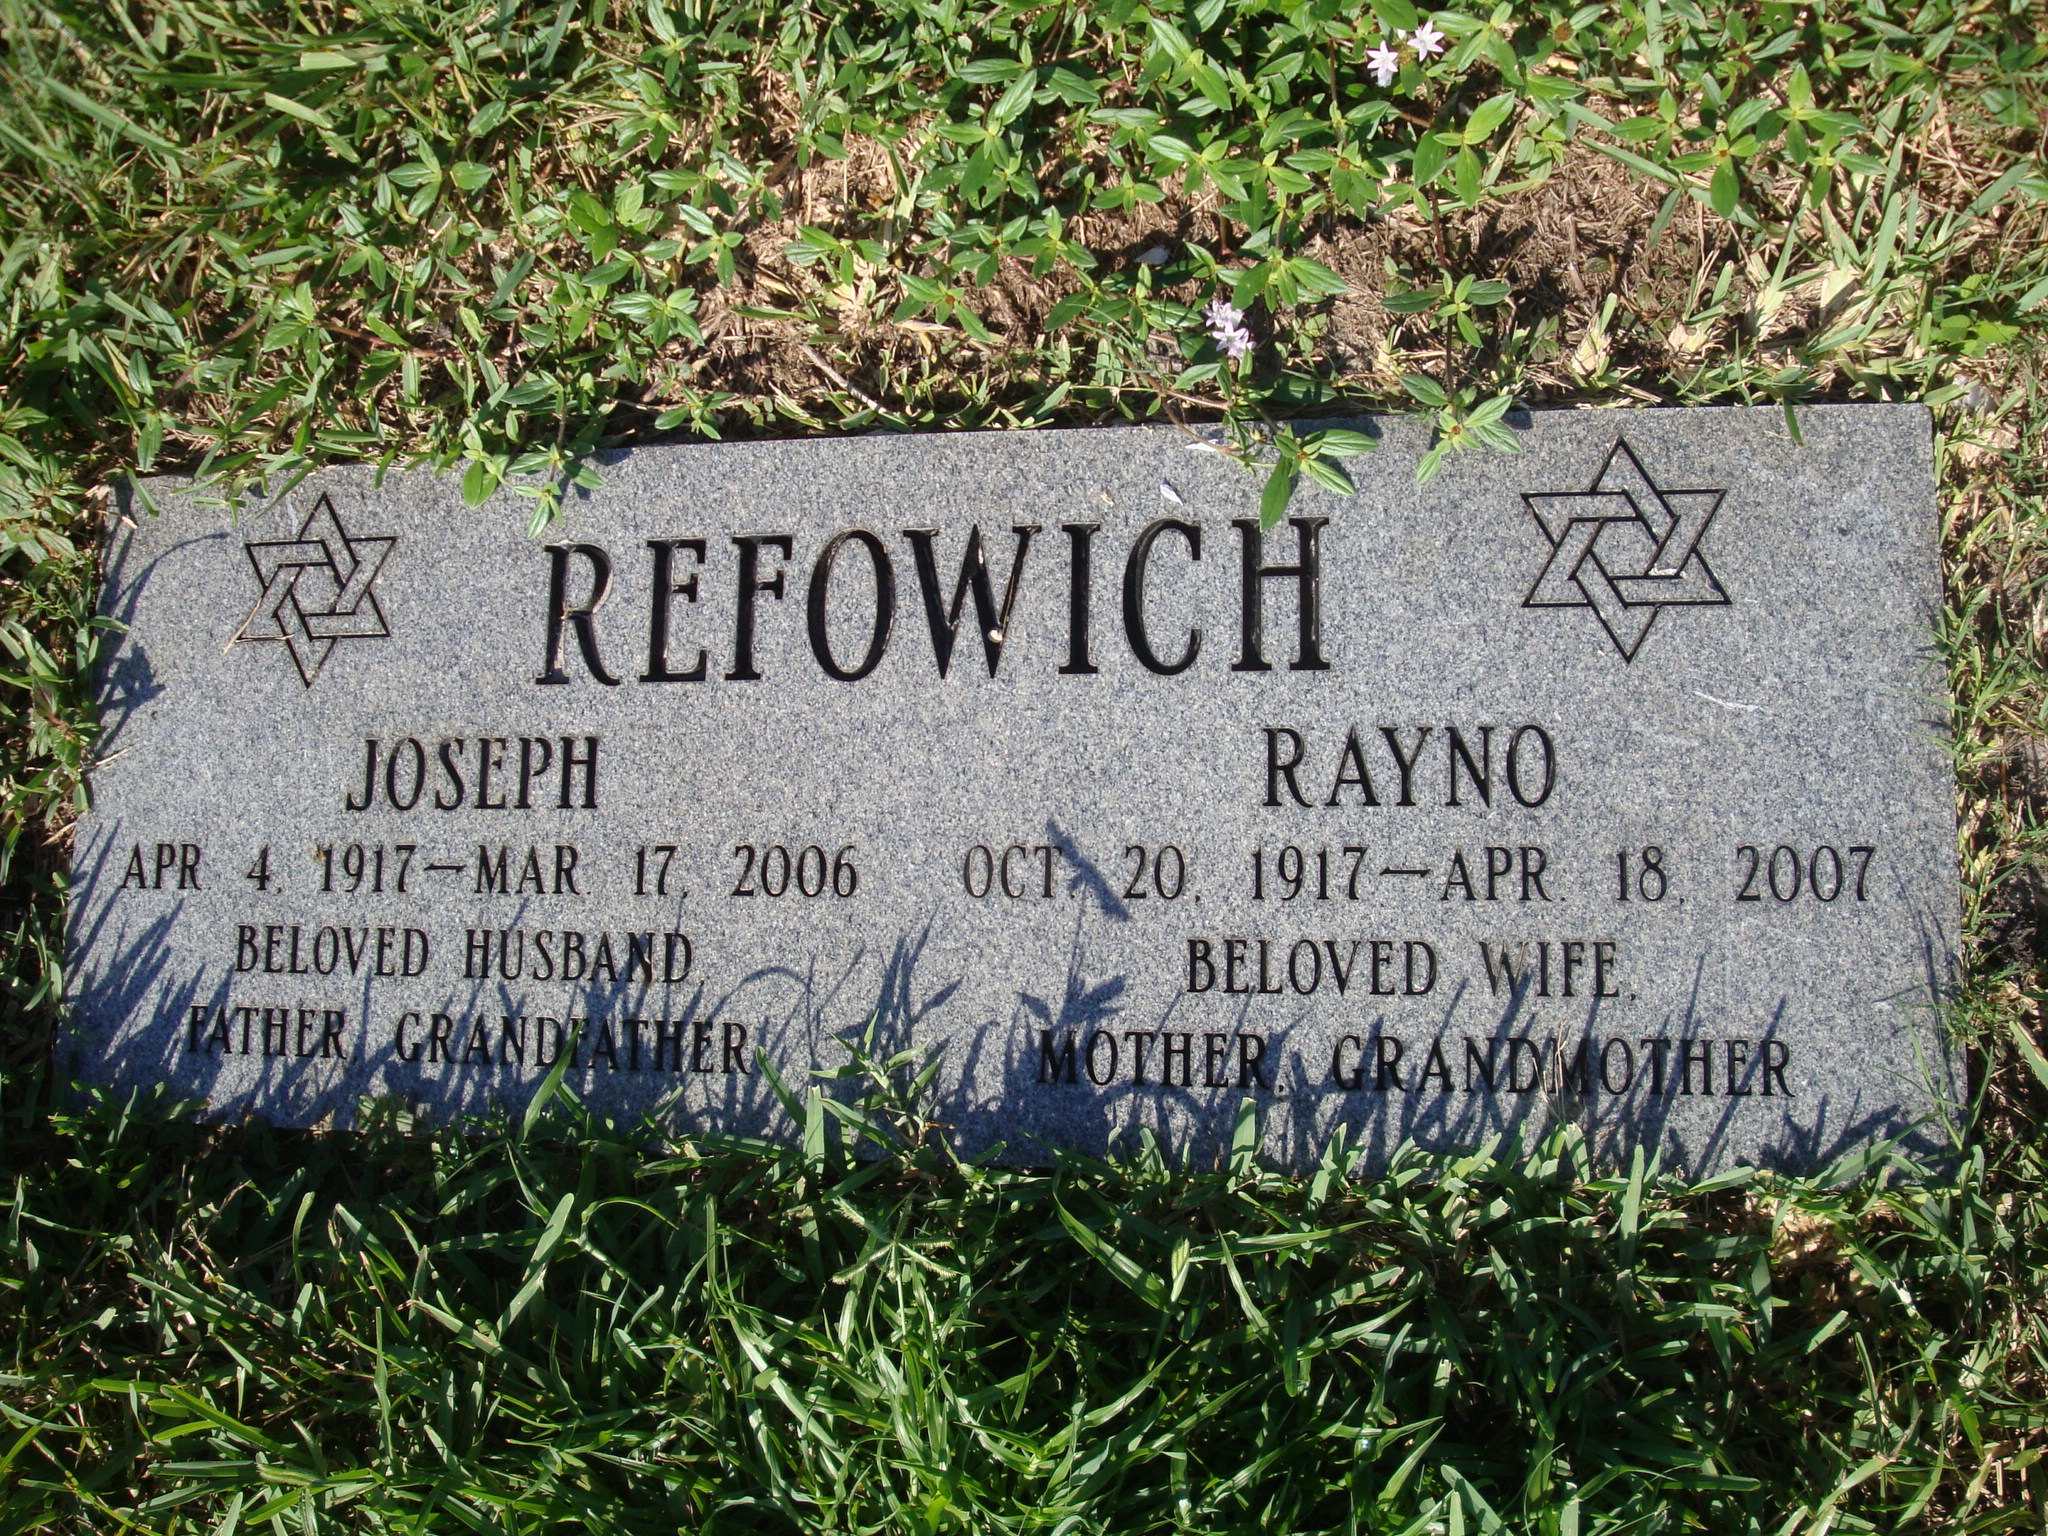 Joseph Refowich